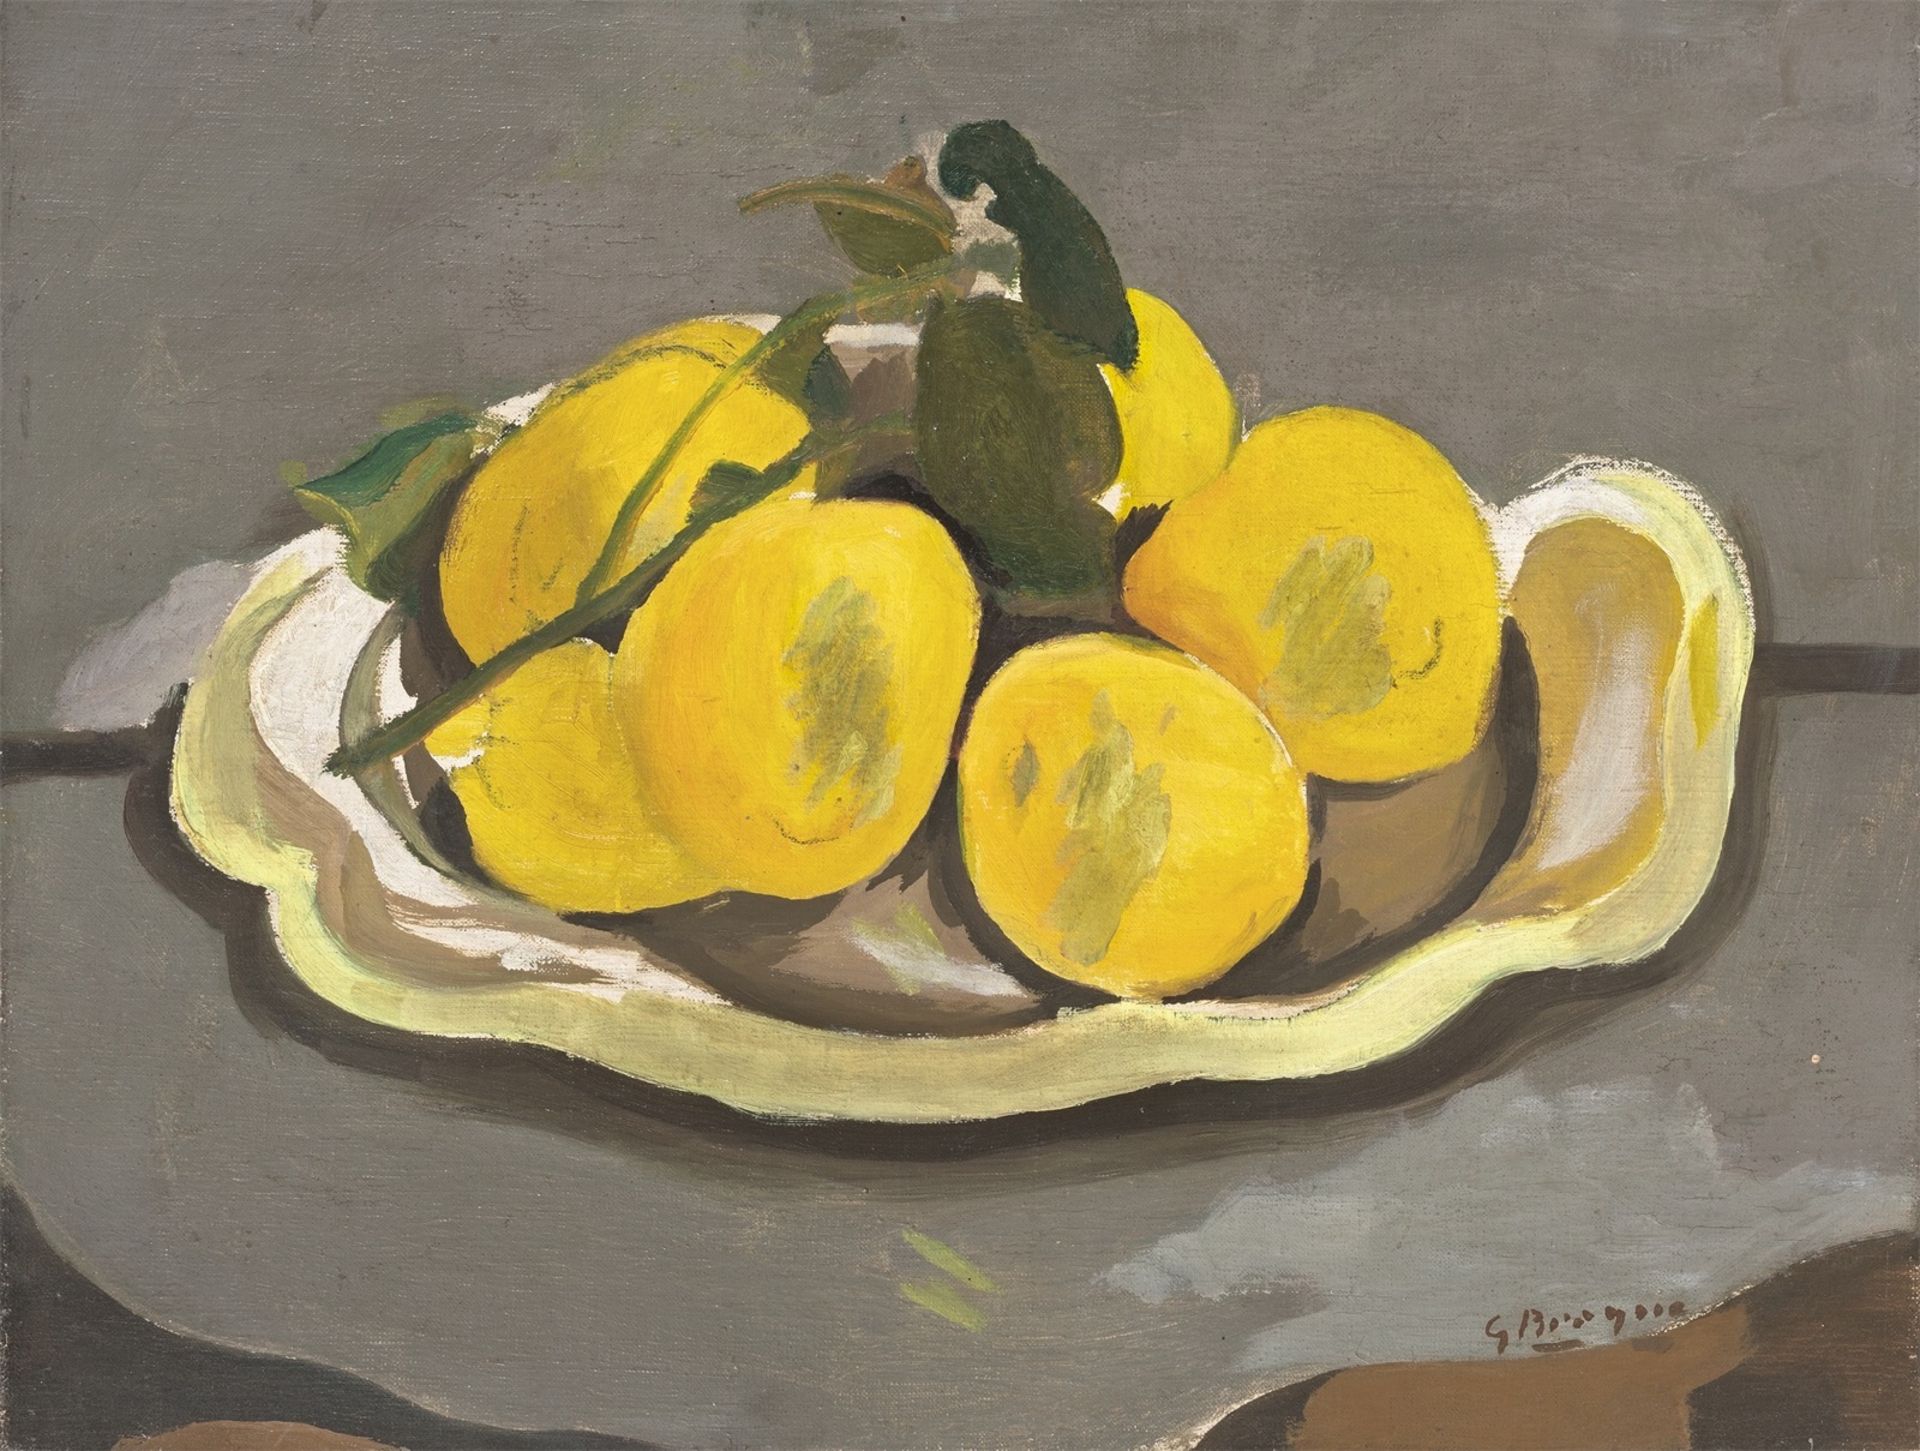 Georges Braque. ”Les Citrons”. 1952